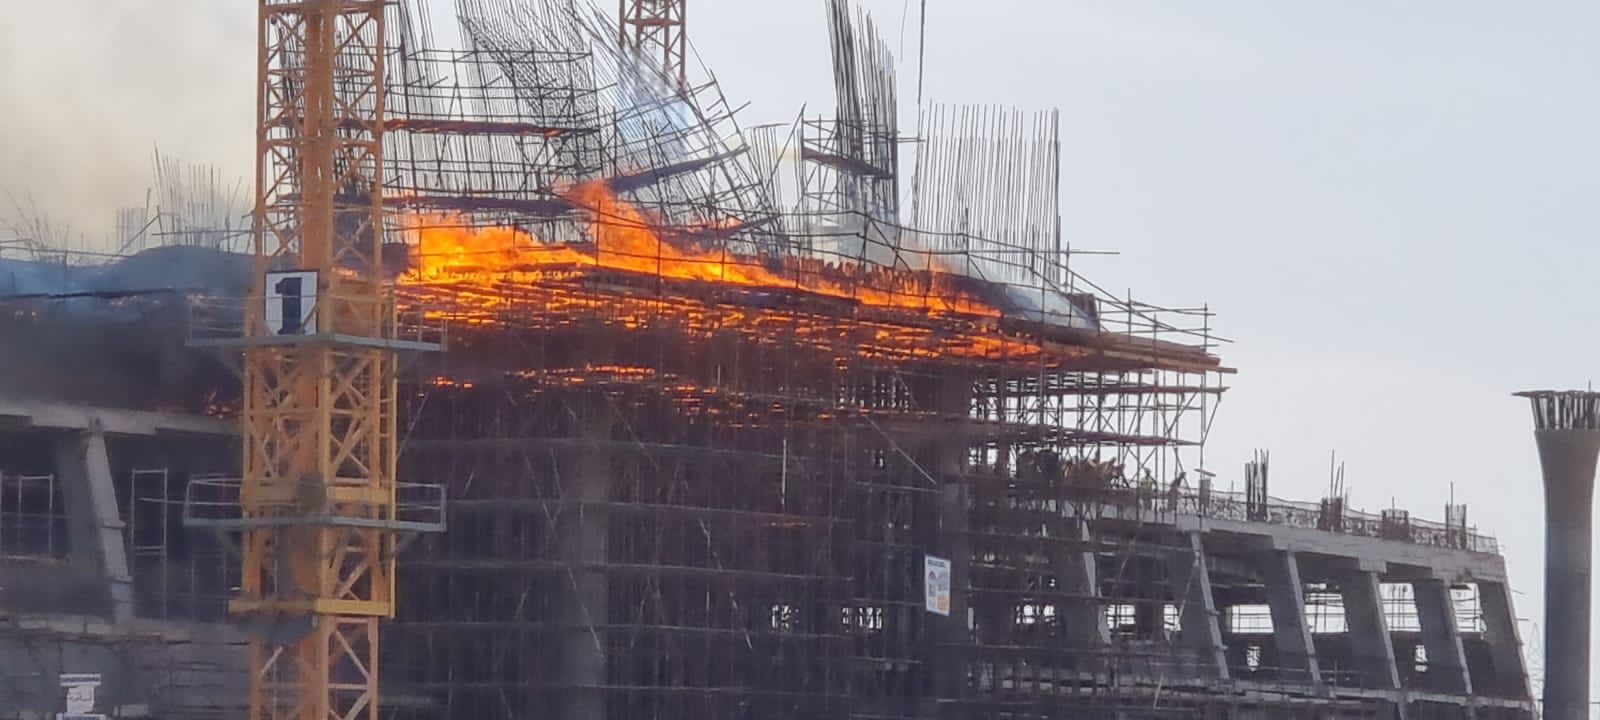 حريق مستشفى مجدي يعقوب تحت الإنشاء بأكتوبر